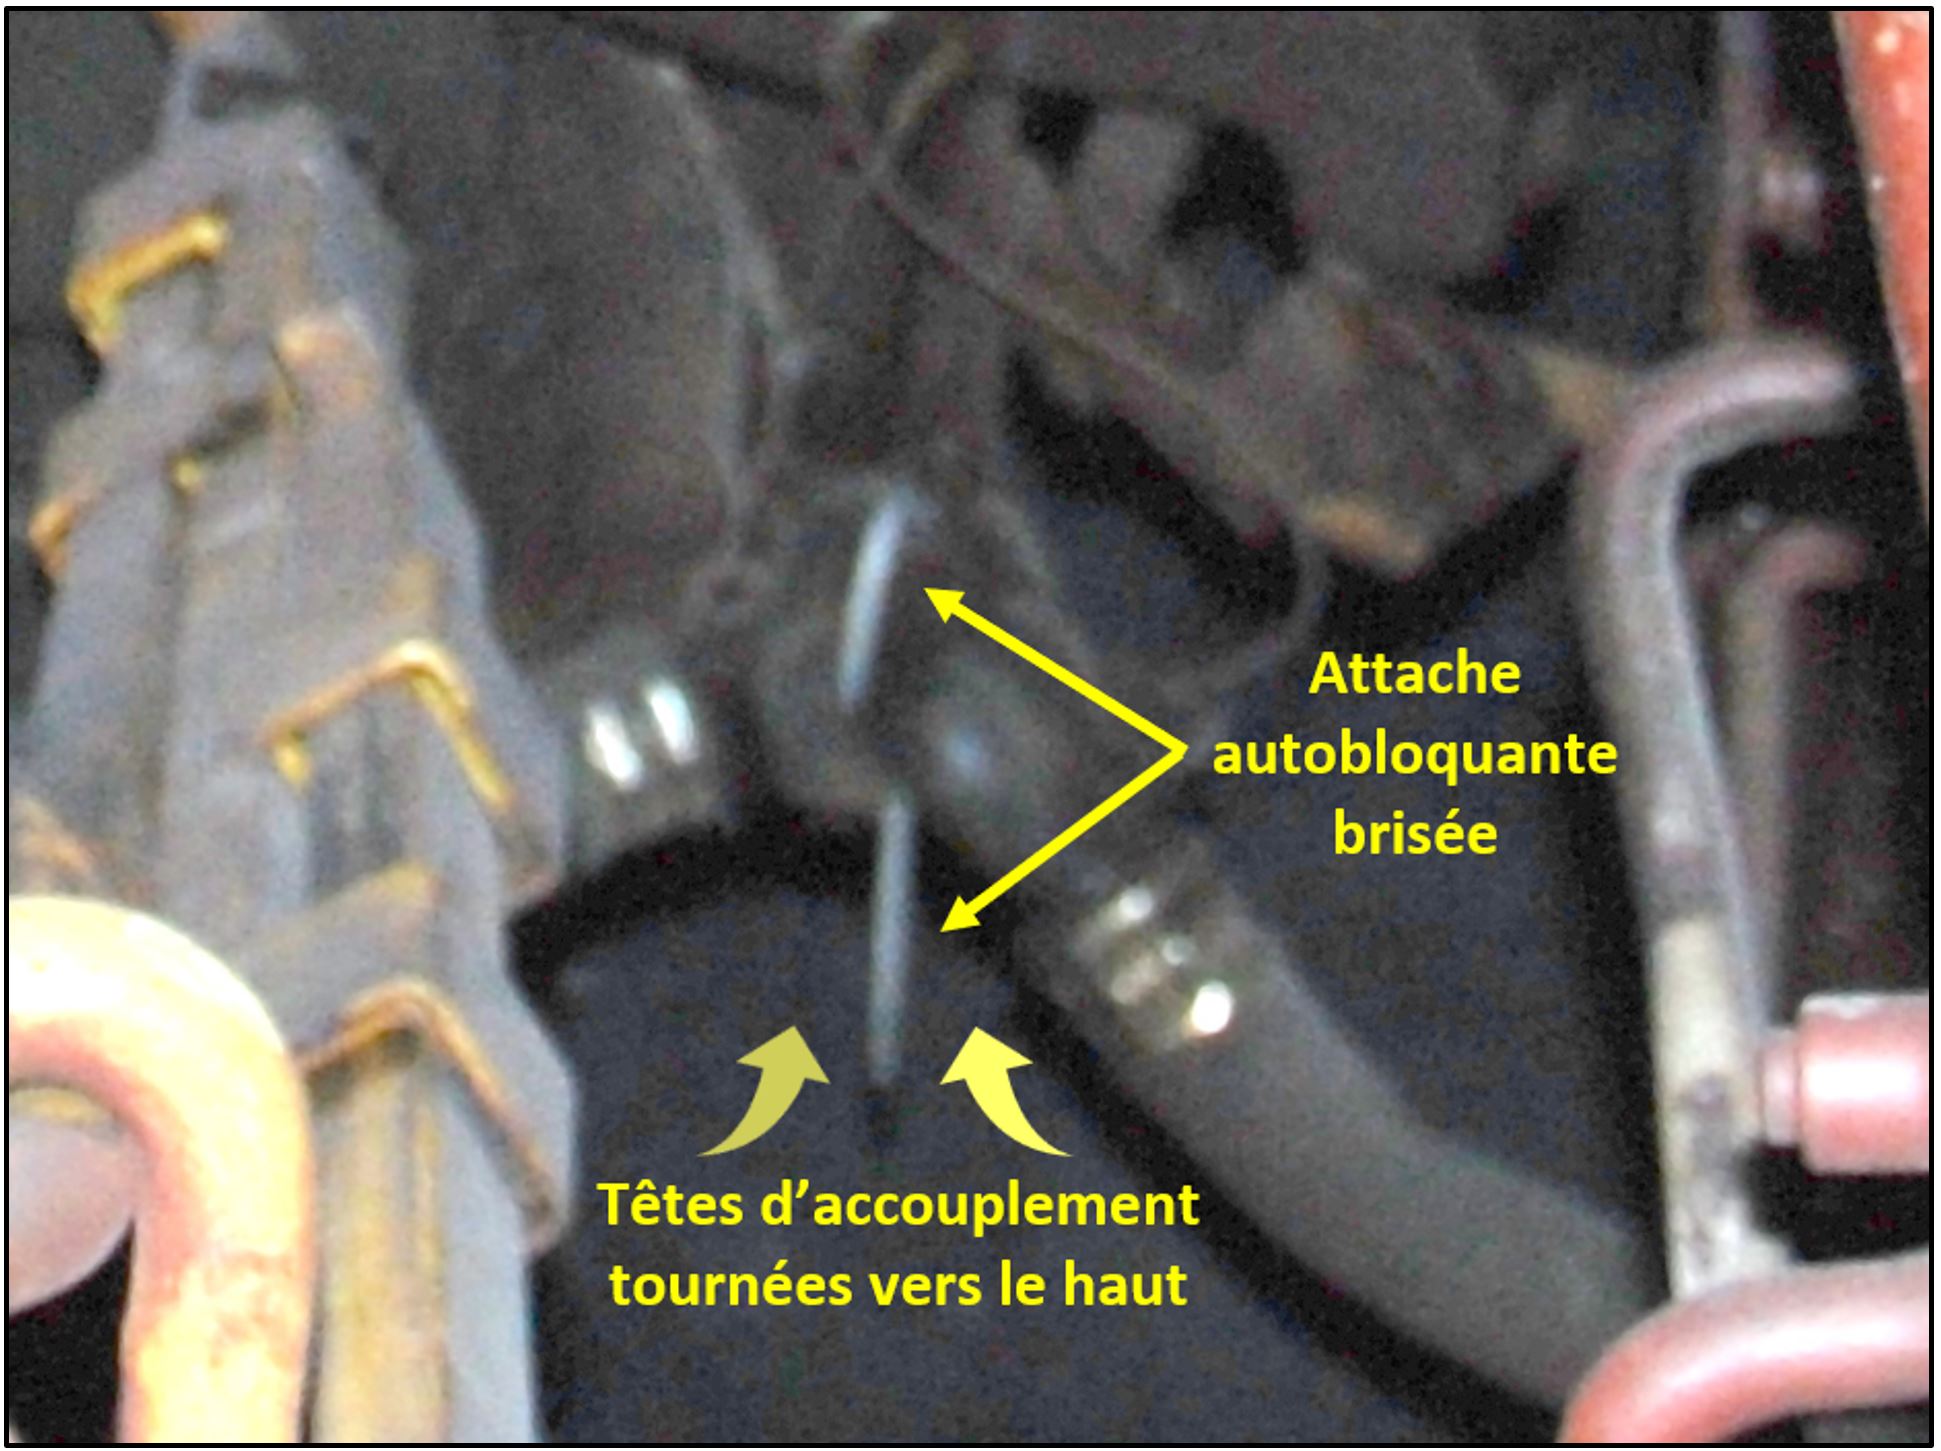 Têtes d’accouplement des tuyaux souples d’extrémité fixées ensemble par des attaches autobloquantes sur l’un des wagons à support central SOO qui ont déraillé (Source : BST)